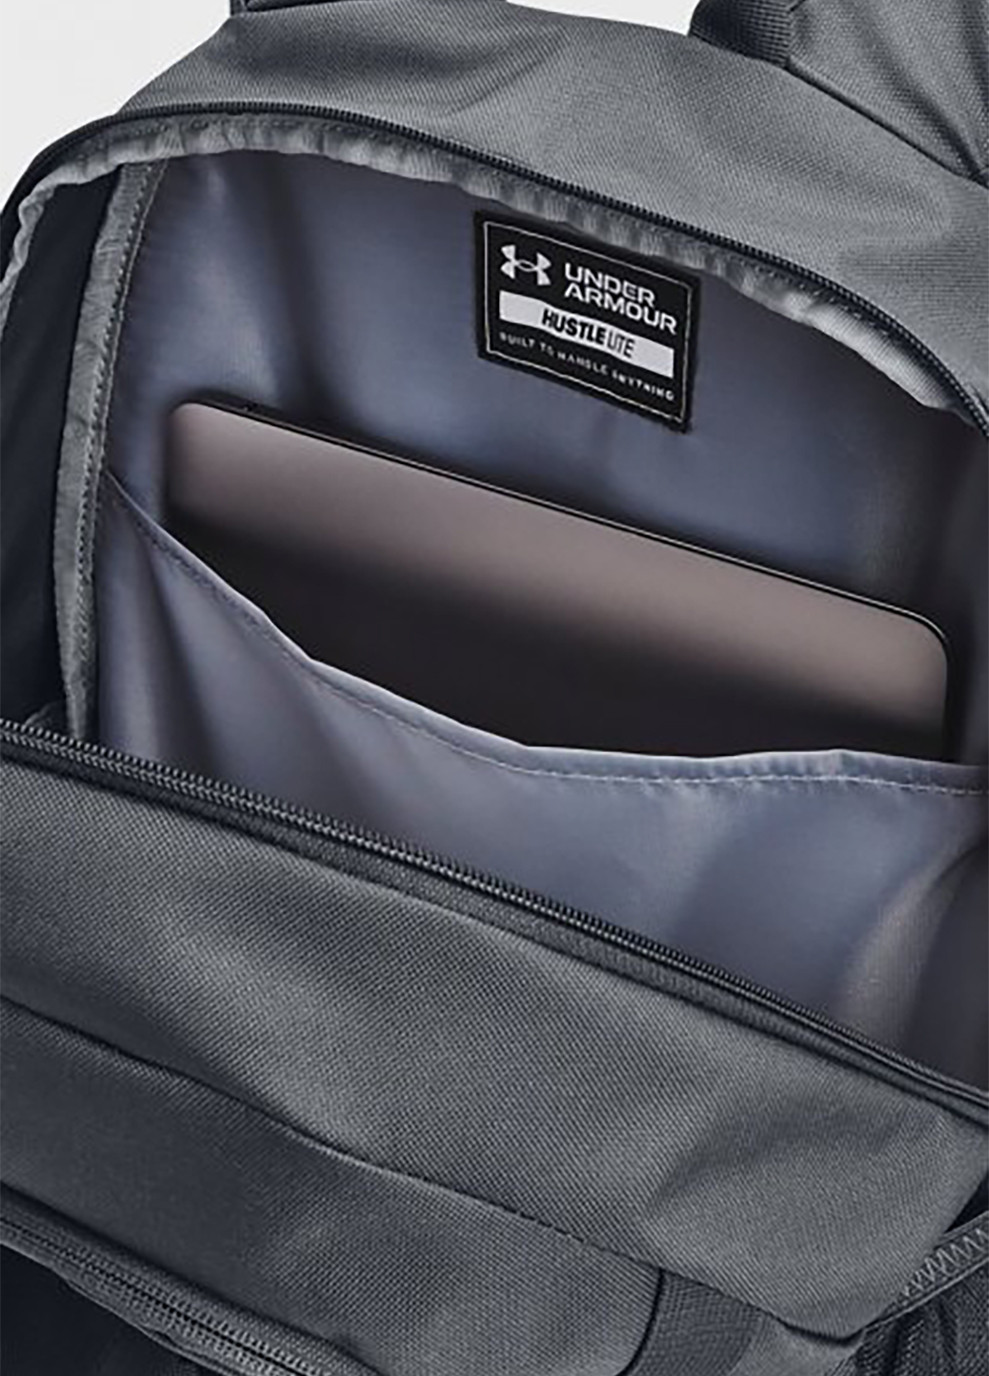 Рюкзак Hustle Lite Backpack Серый Under Armour (260633809)